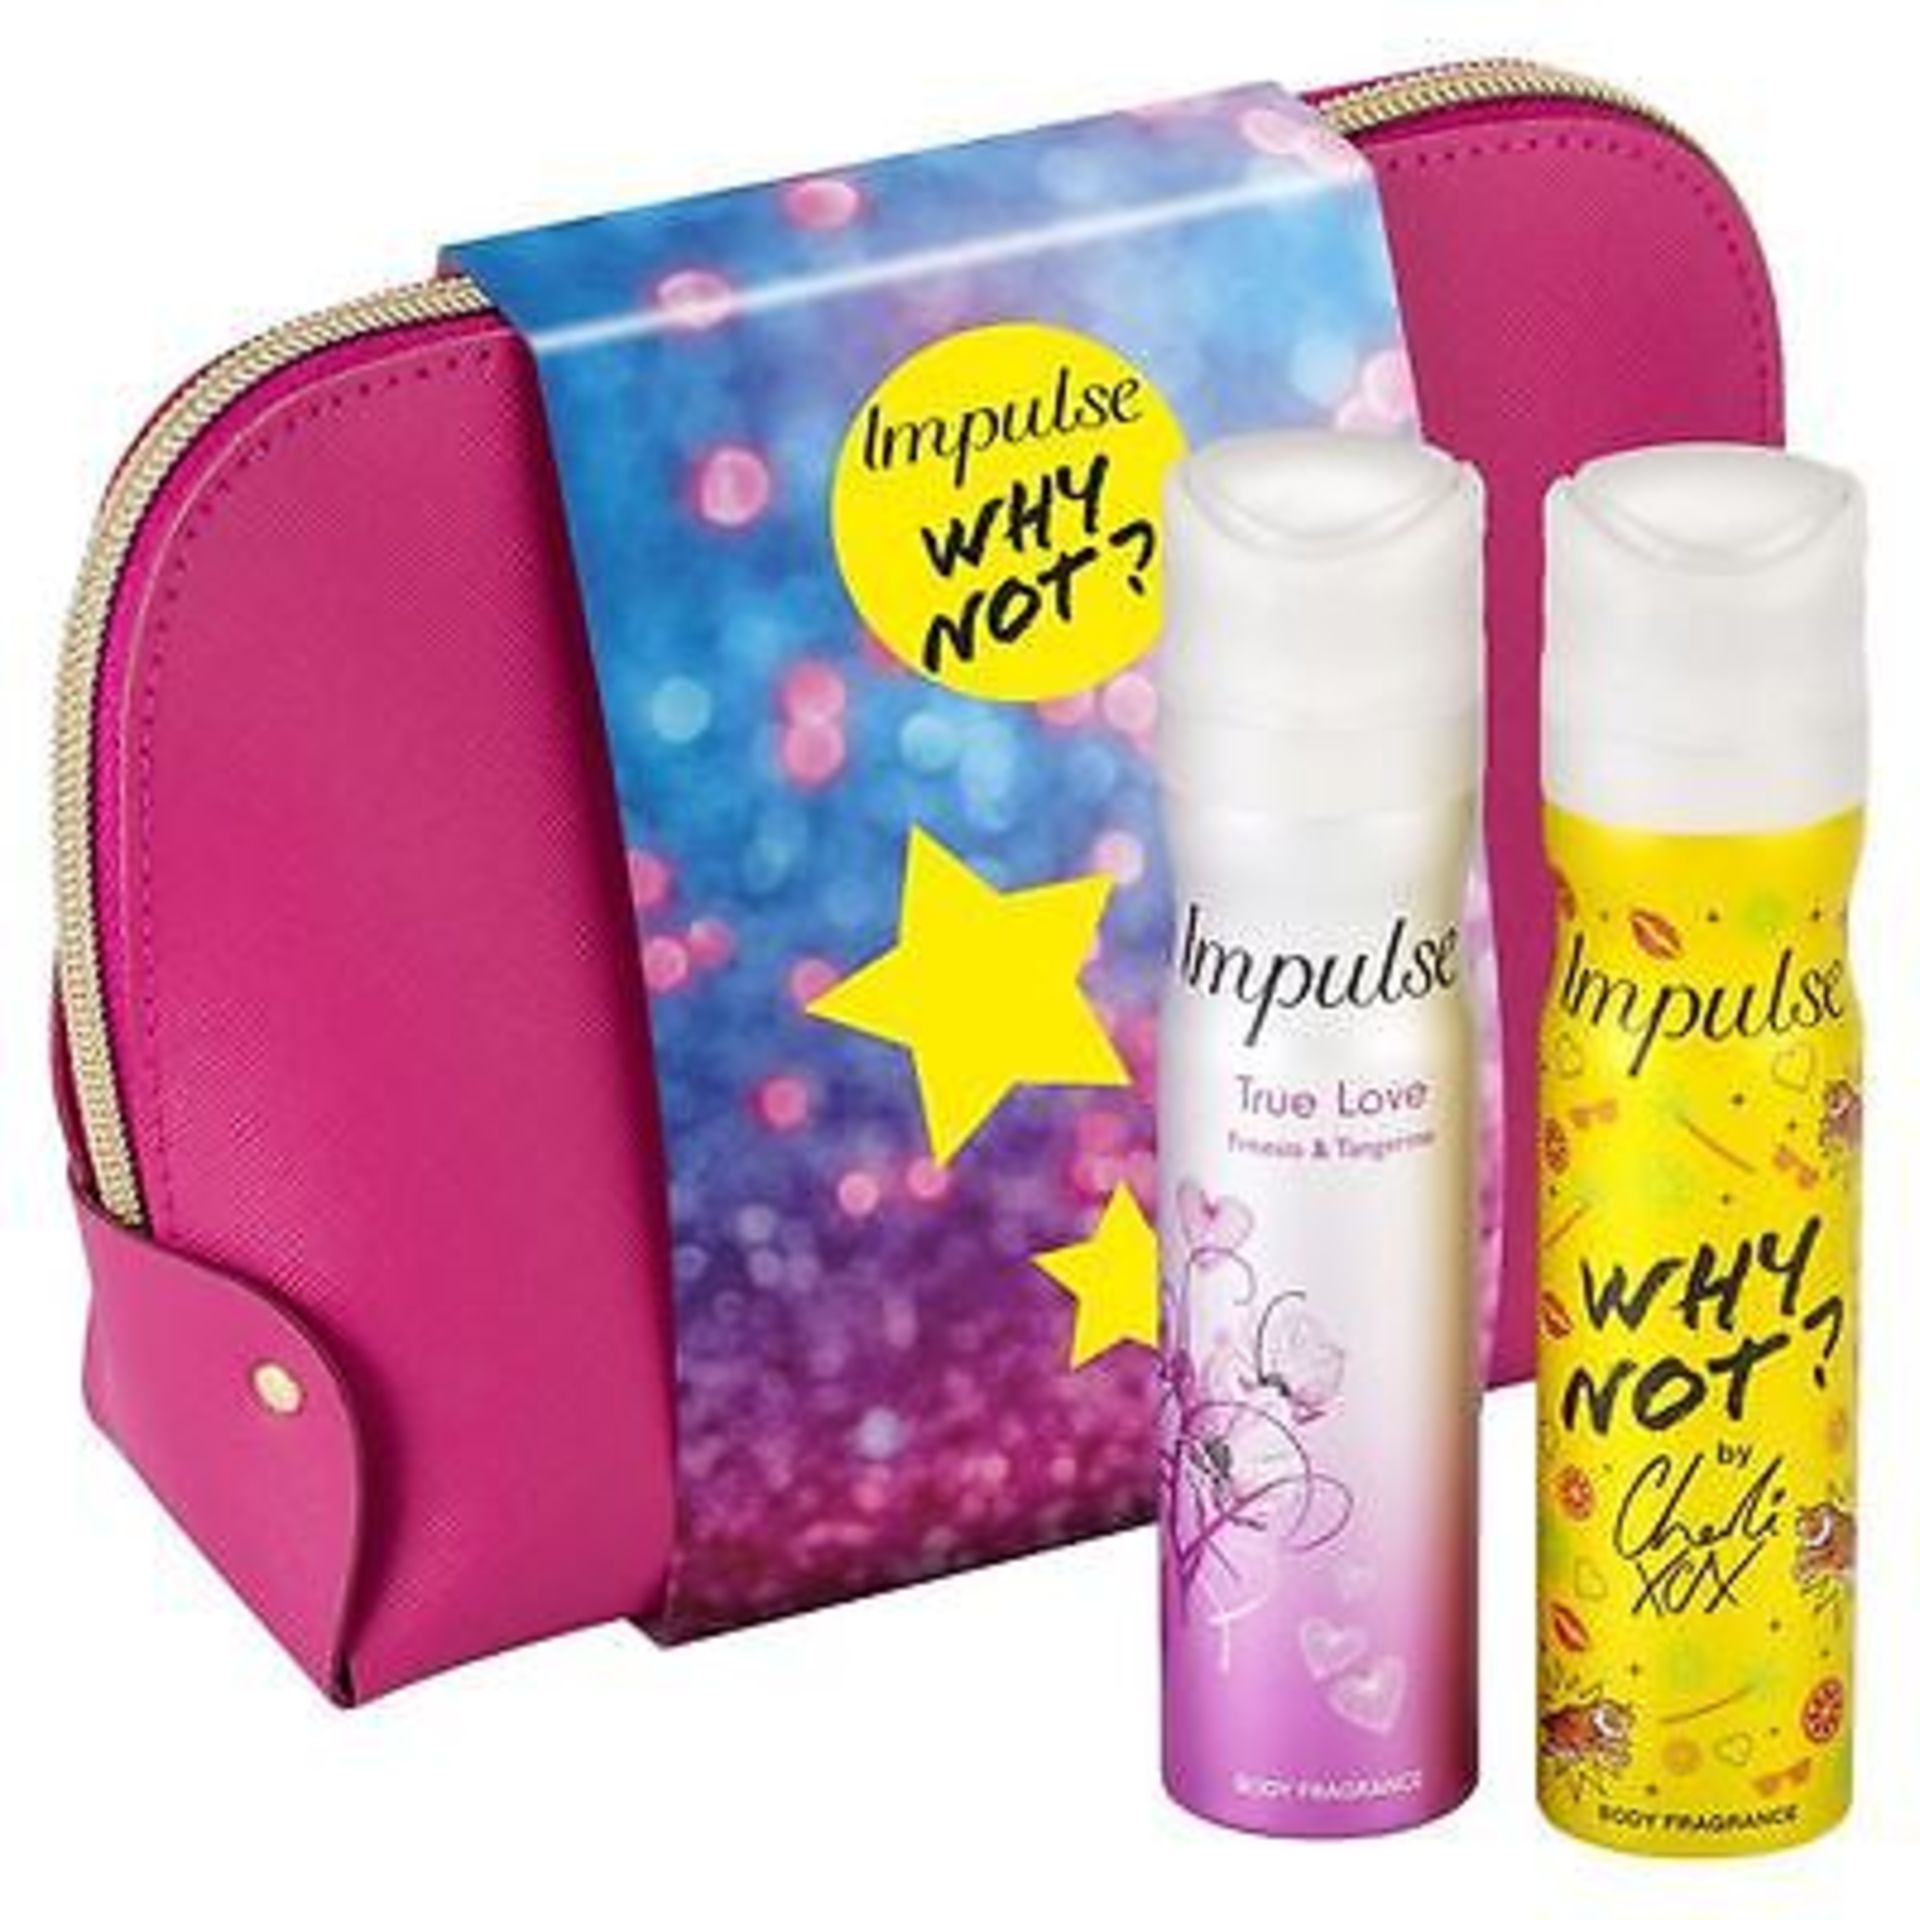 V Brand New Impulse Why Not? Body Fragrance Gift Set Including 75ml True Love Body Fragrance -